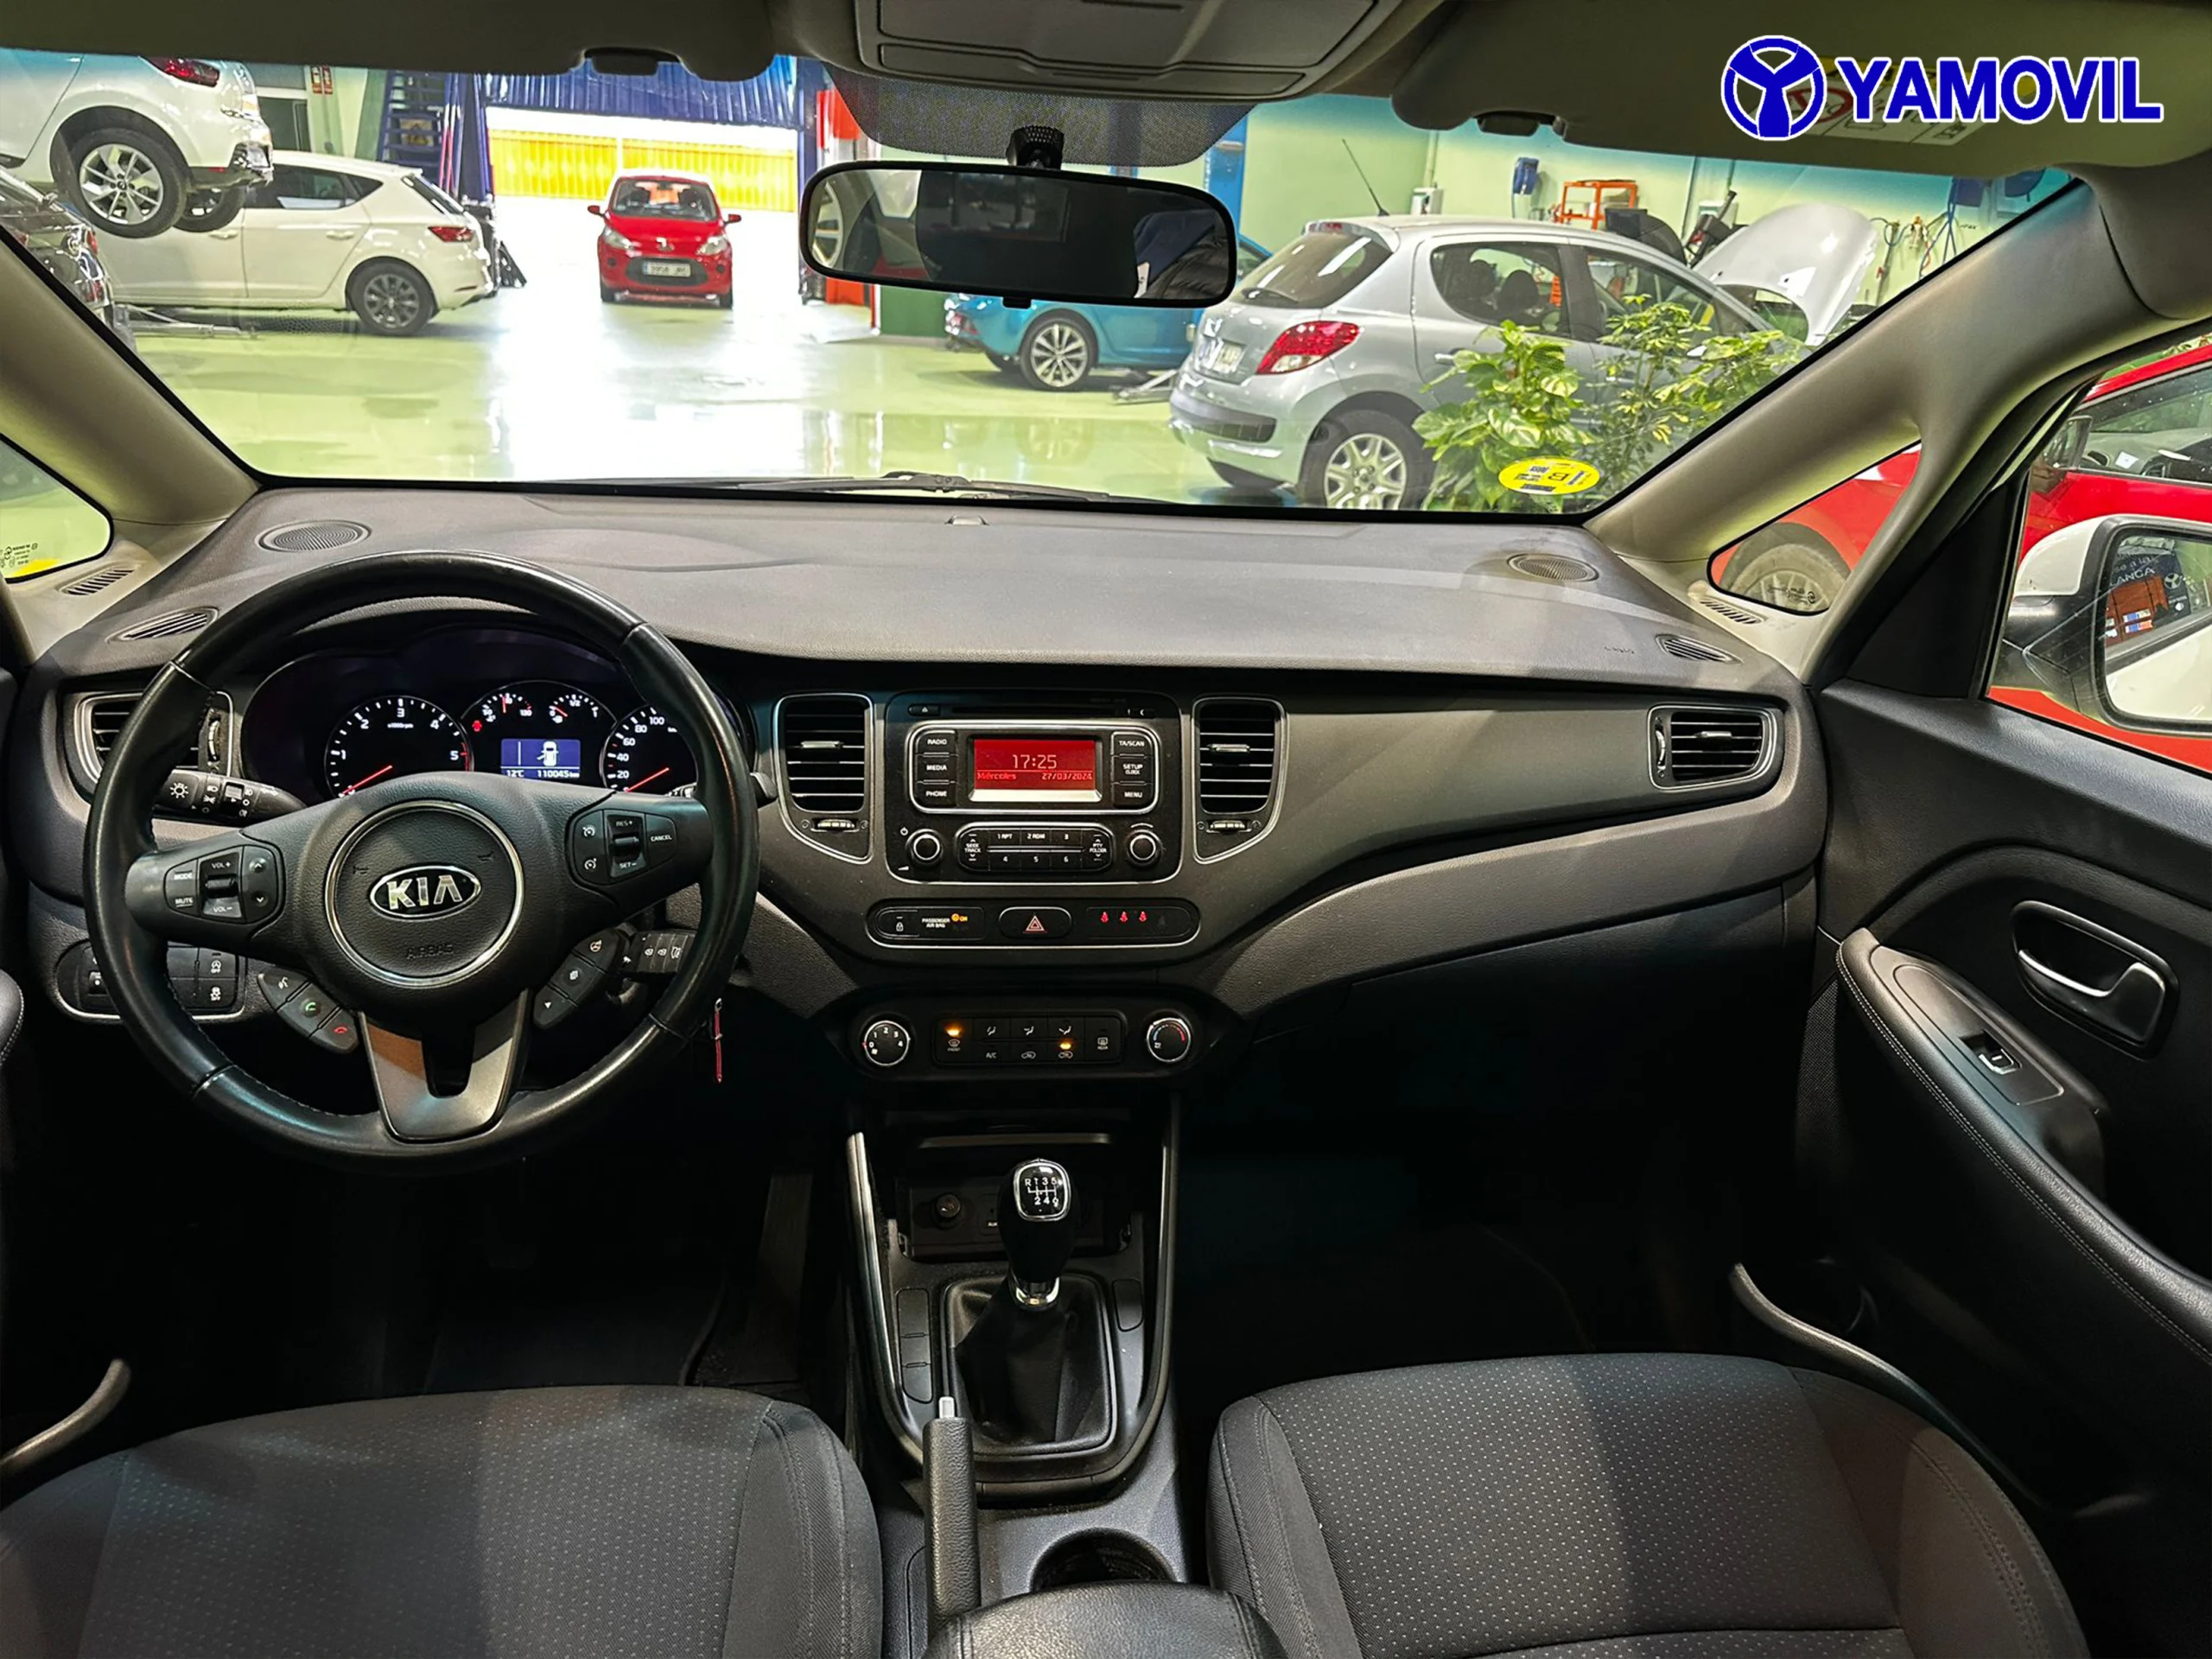 Kia Carens 1.7 CRDi VGT Eco-Dynamic Drive 85 kW (115 CV) - Foto 5